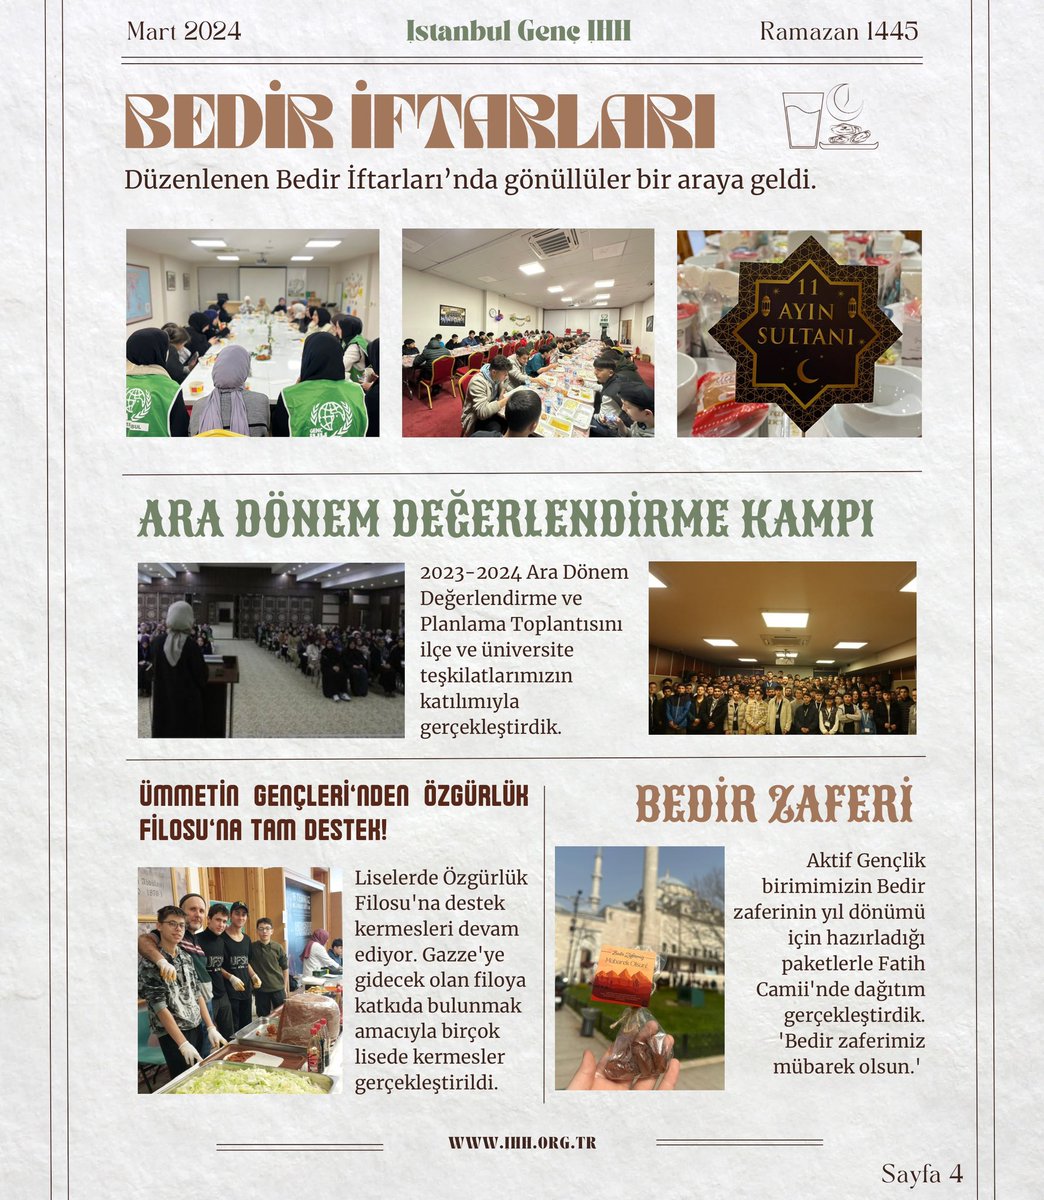 İstanbul Genç İHH Nâme’nin Mart ayı dijital sayısı çıktı! 🗞️ İstanbul’un gençleri şehrin iyilik nabzını bu sayfada tutuyor. Gençliğin gündemi için seni de sayfamıza bekleriz.